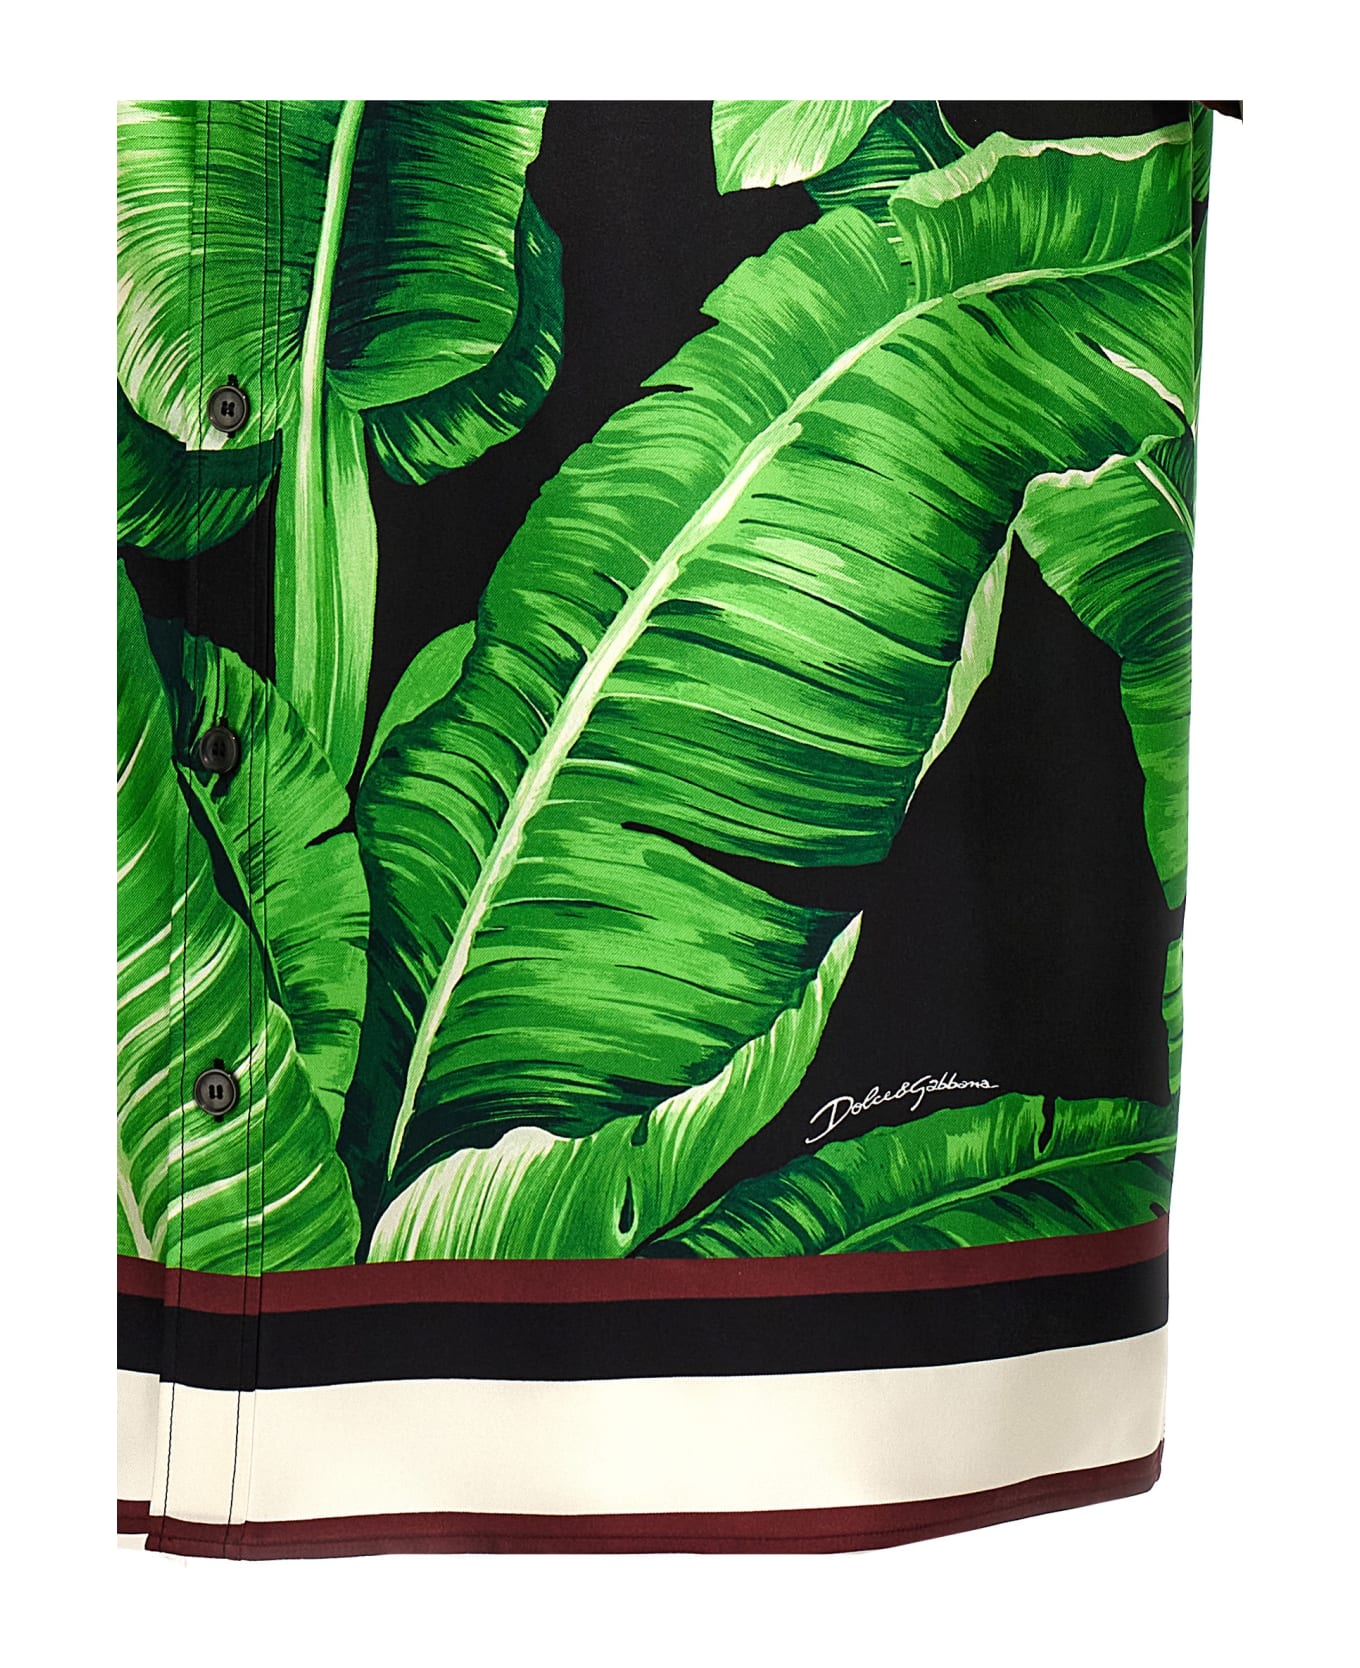 Dolce & Gabbana 'banano' Shirt - GREEN/BLACK シャツ